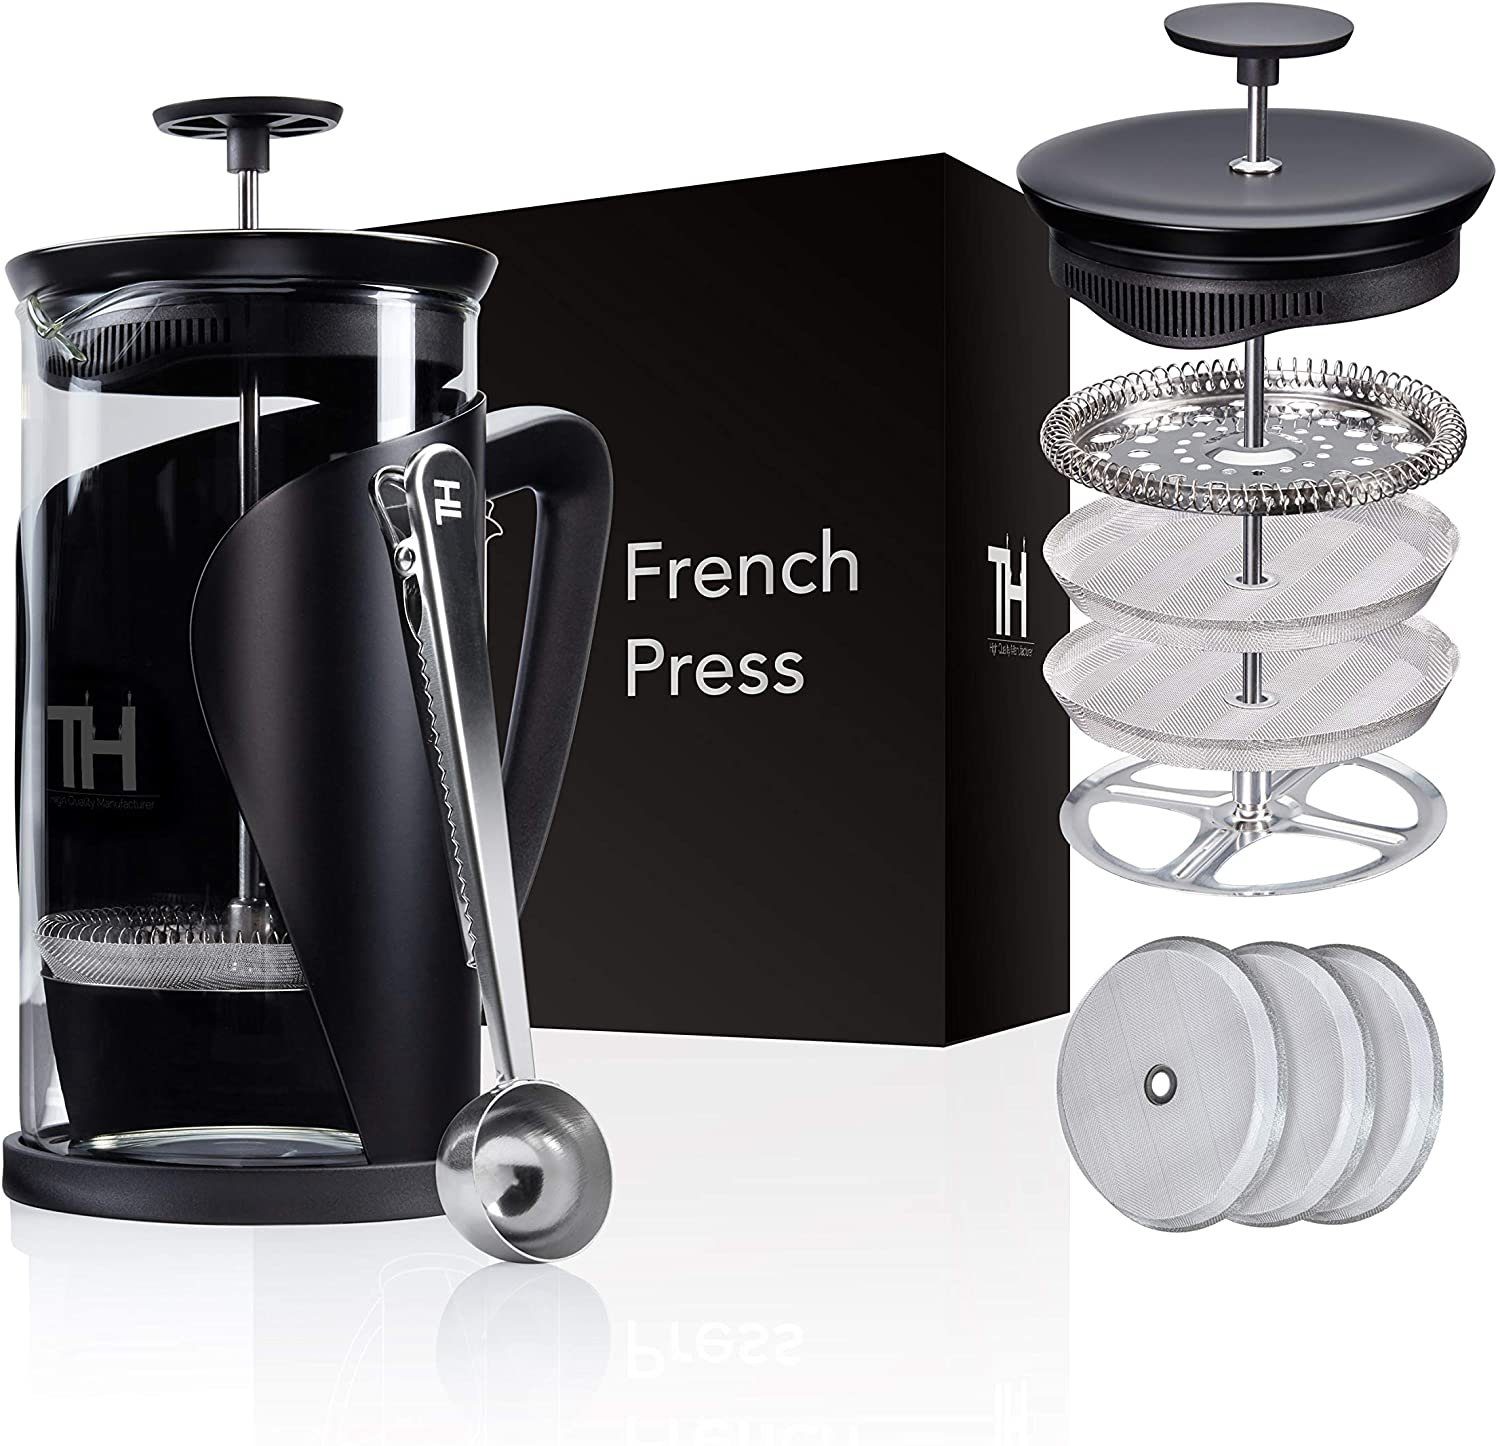 Press Kaffeebereiter Kanne & Filtersystem, French 4D Edelstahl mit Thiru Glas